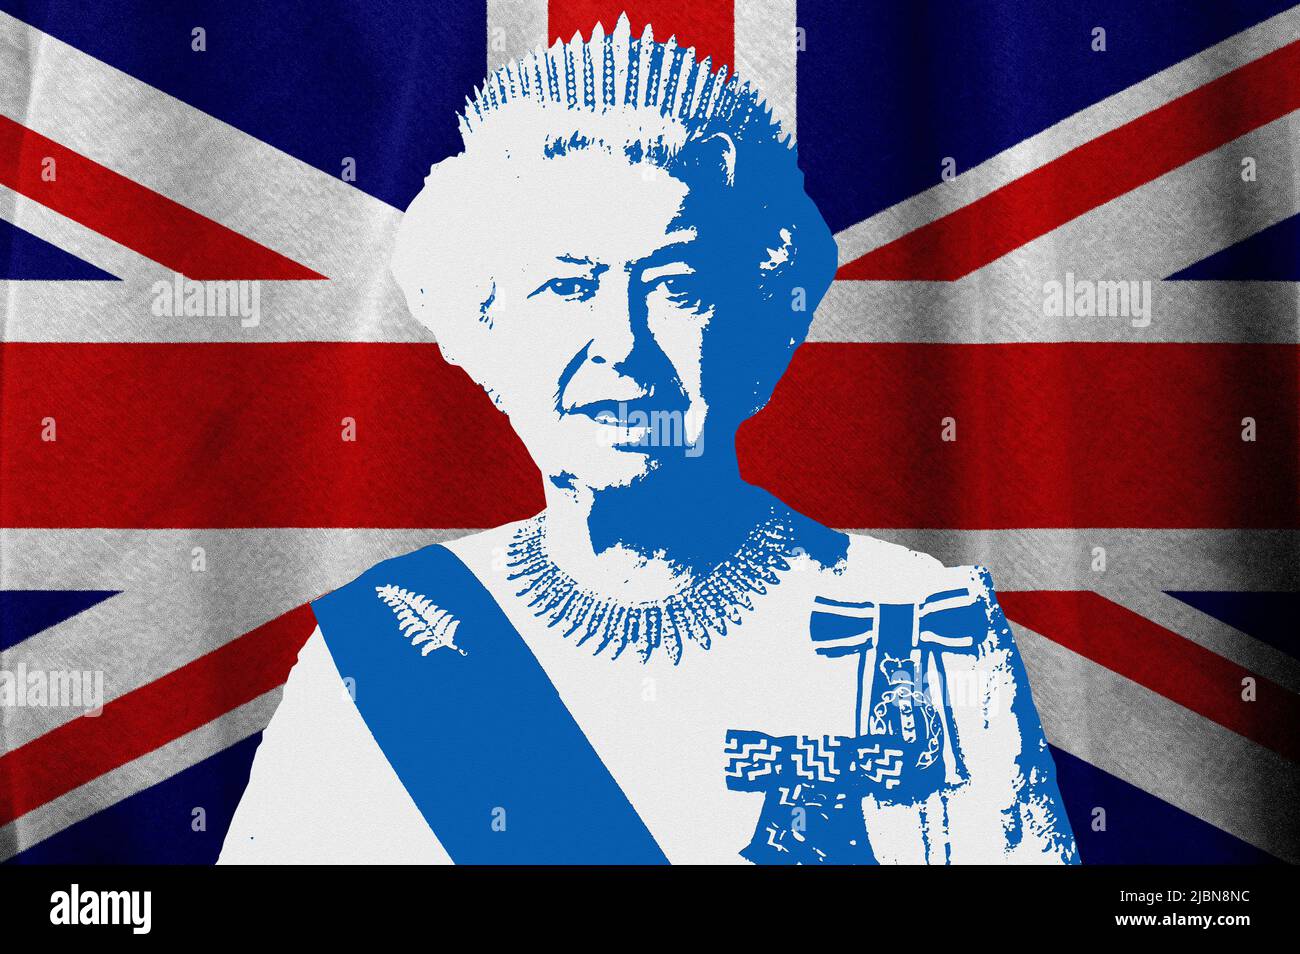 Queen Elizabeth II and UK flag Stock Photo